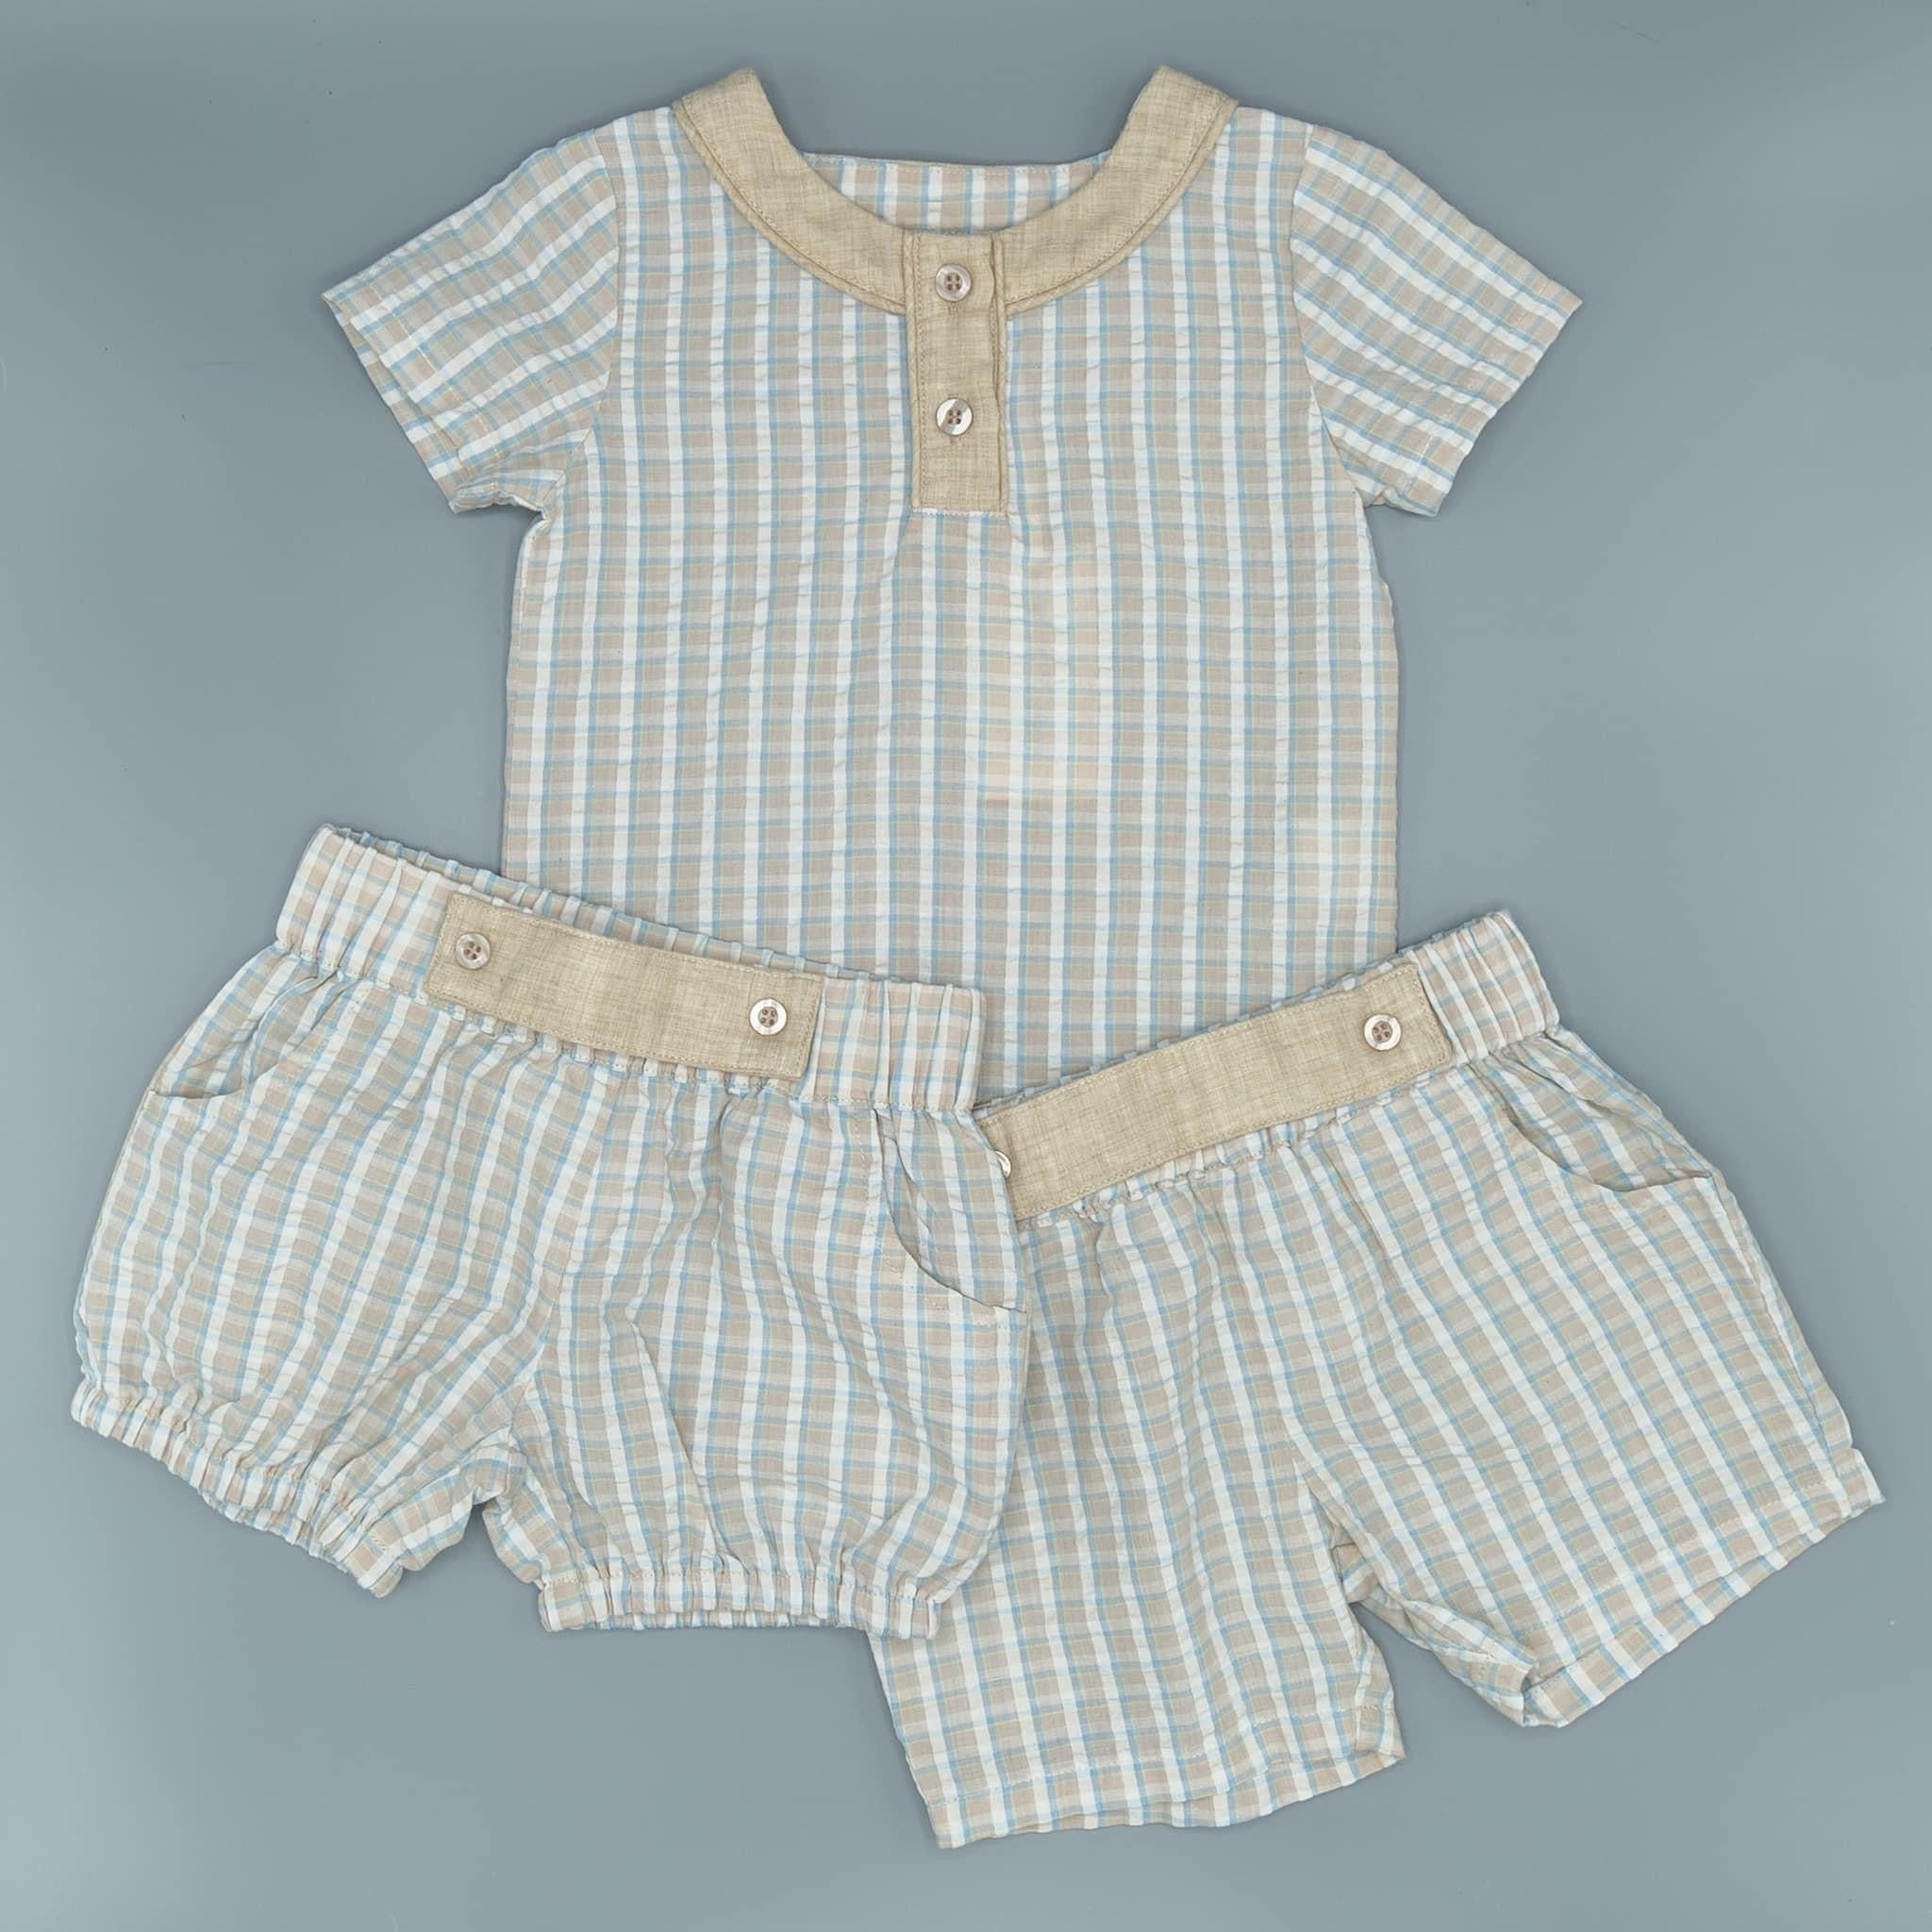 Amazing Grace Plaid Henley Shirt and Shorts Boys Set - Evie's Closet Clothing